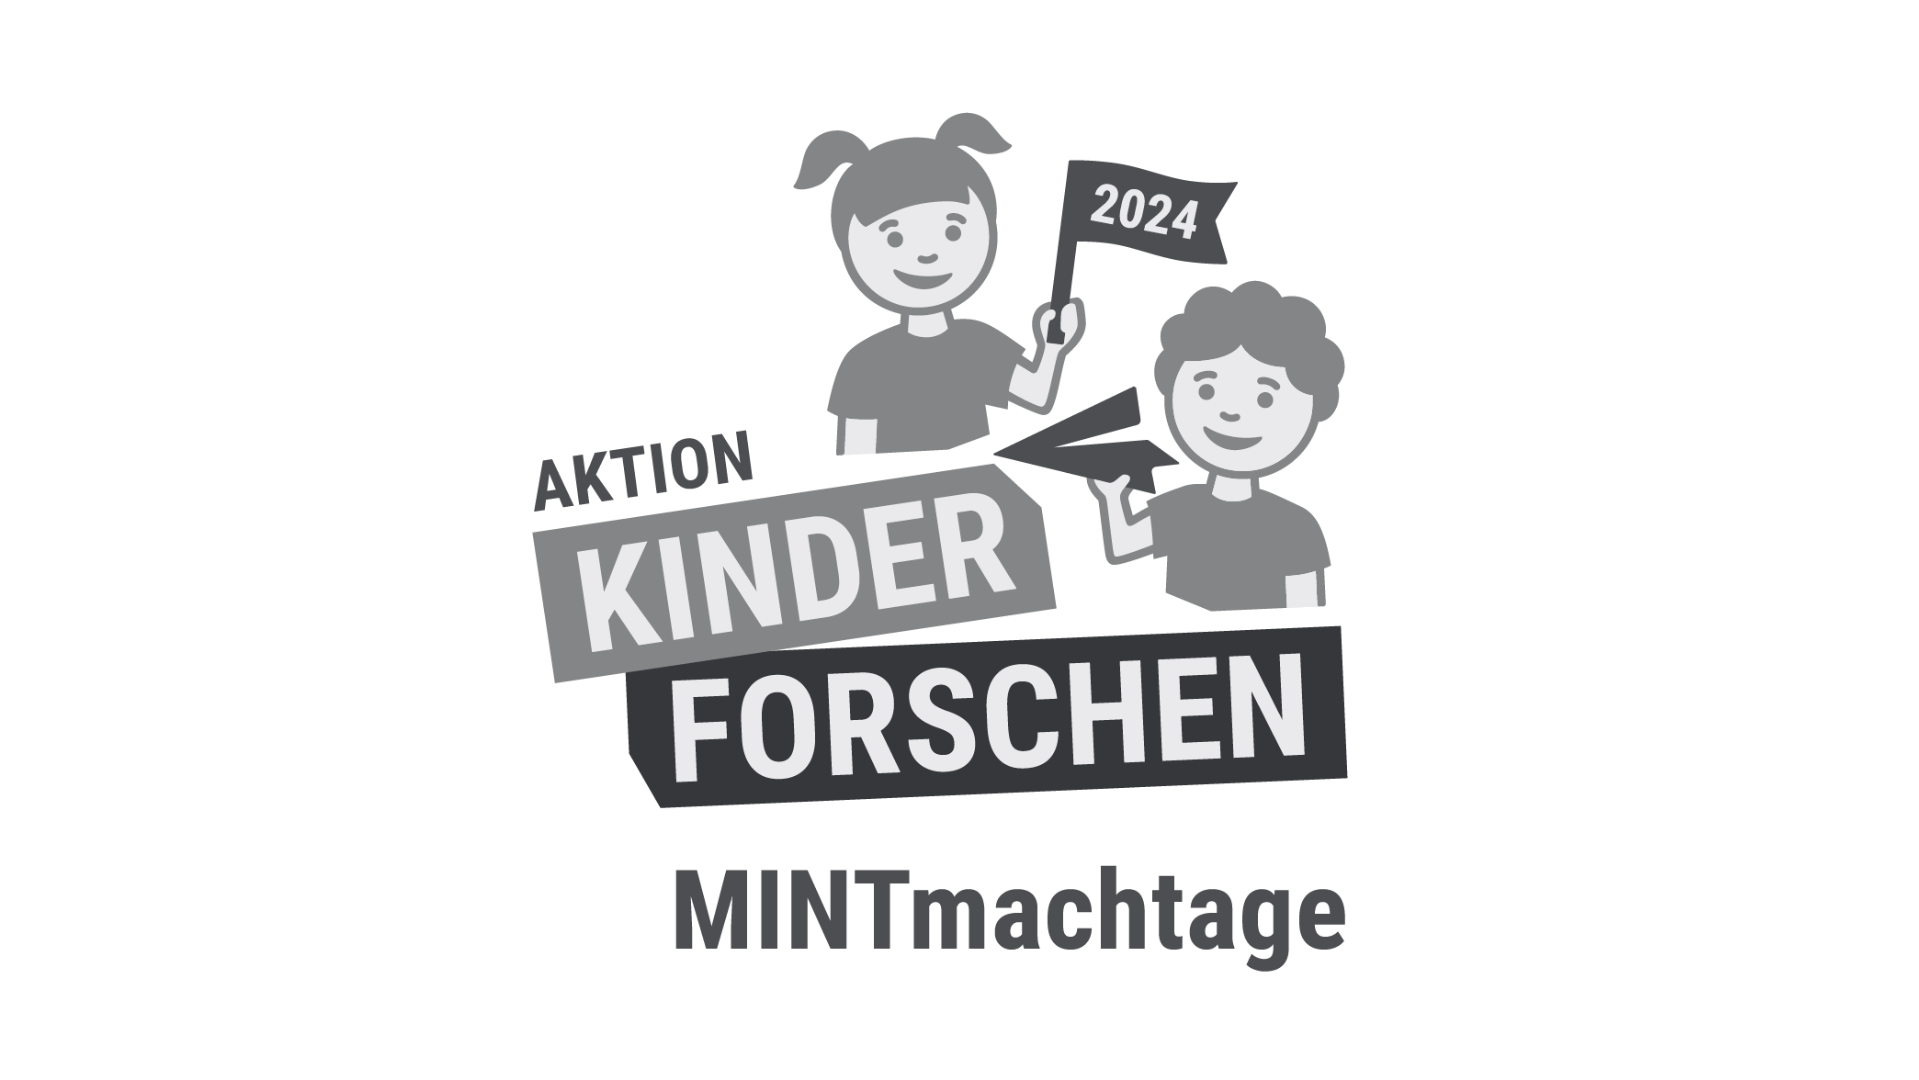 Schriftzug "Stiftung Kinder Forschen" mit der Unterschrift "MINTmachtage", darüber eine Zeichung von zwei Kindern.